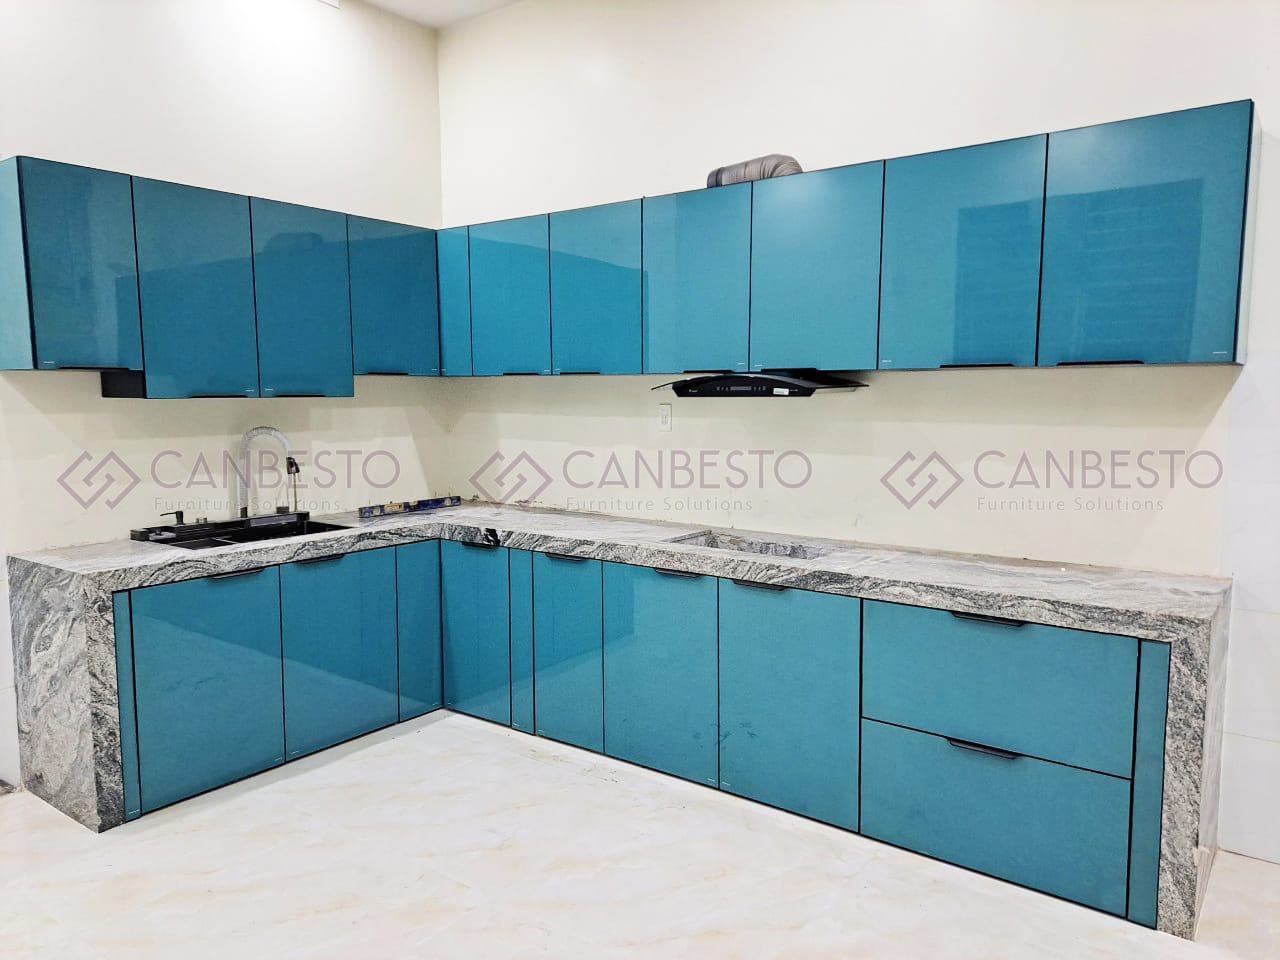 Canbesto: Tủ bếp nhôm kính, thiết kế nội thất tại Biên Hòa - Đồng Nai.